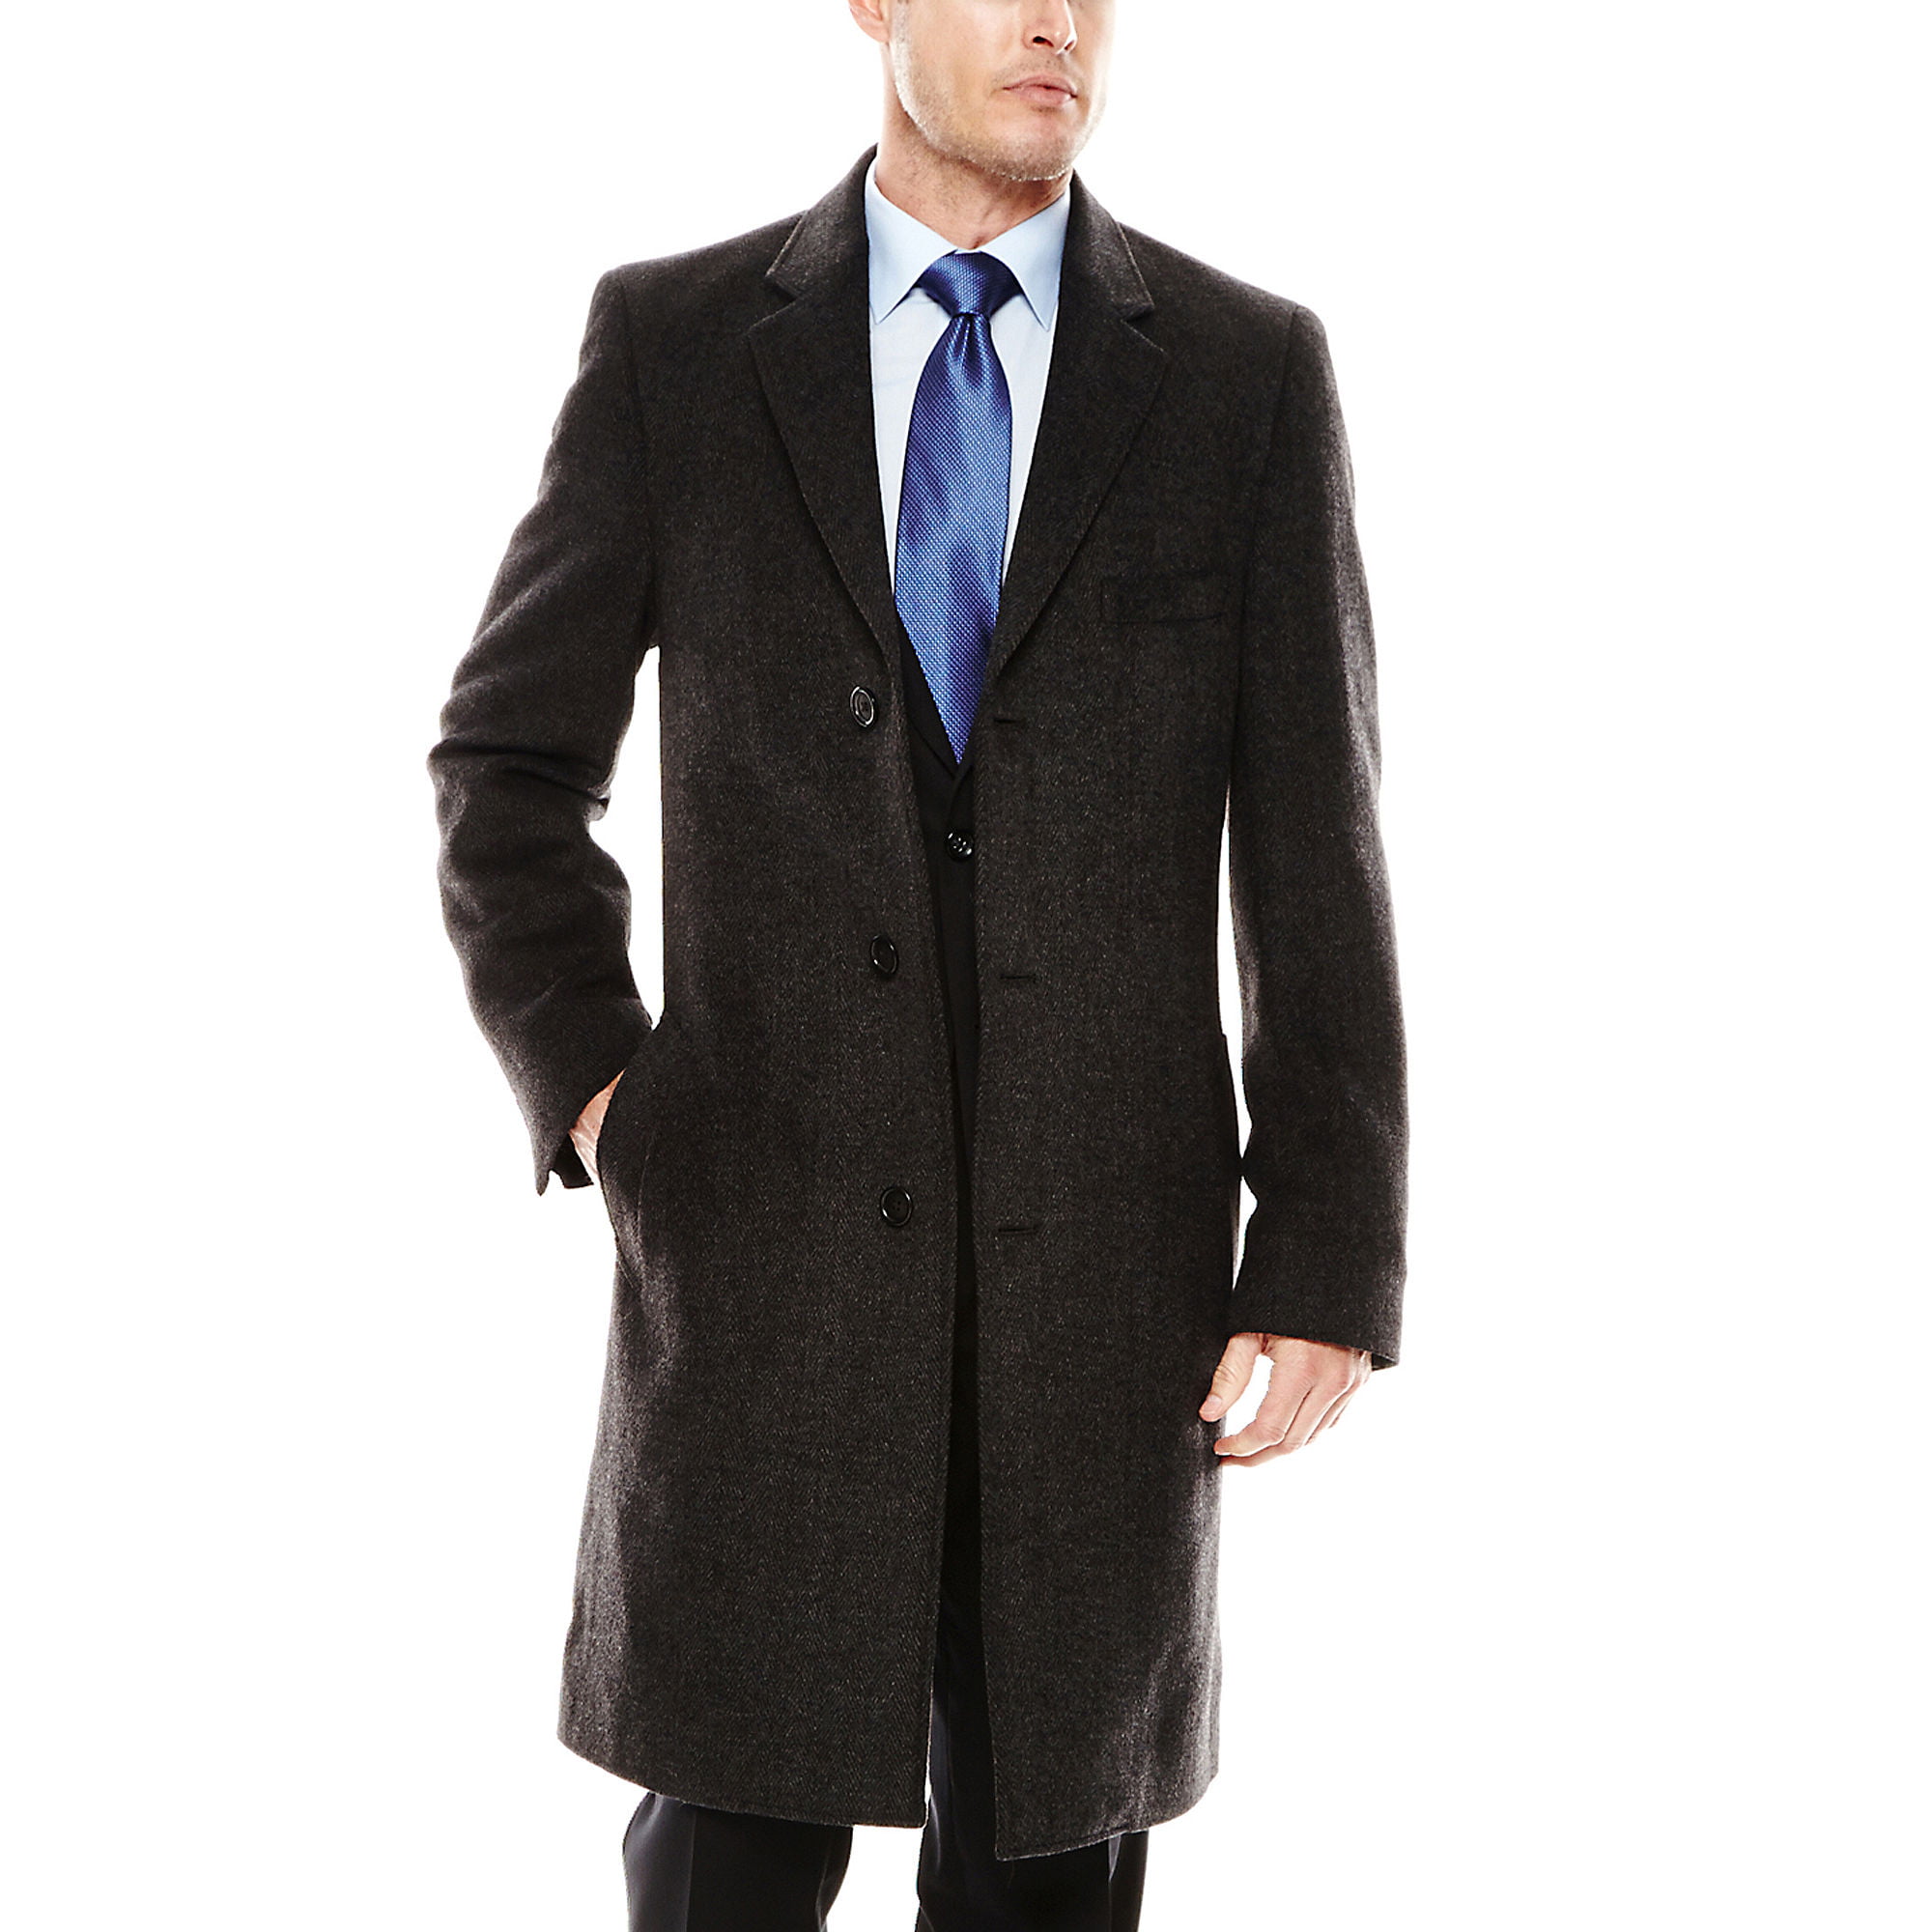 Stafford CHARCOAL Men's Signature Wool Blend Top Coat, 40 REG - Walmart.com